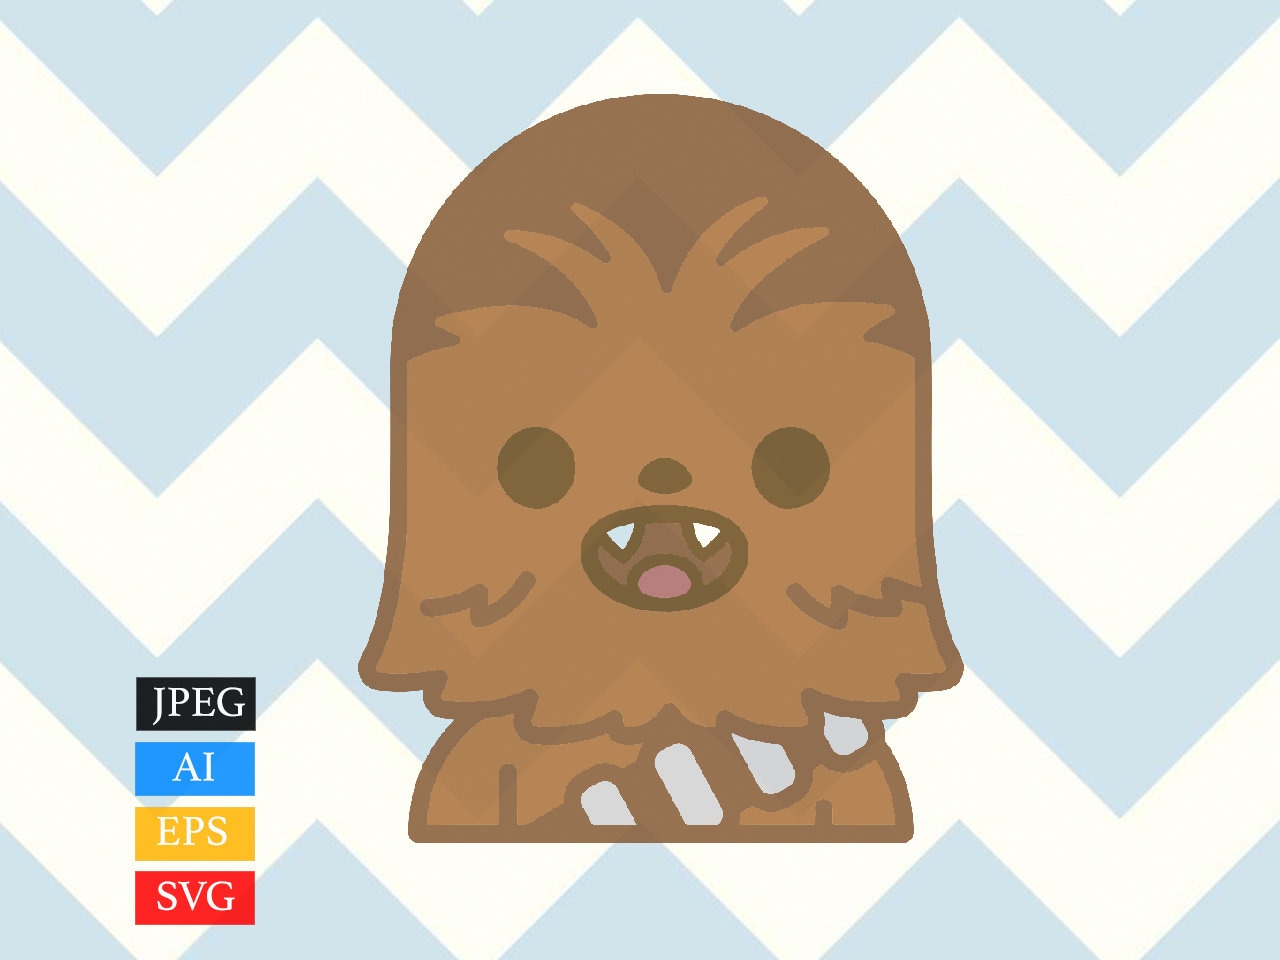 1280px x 960px - Star Wars Chewie SVG Chewbacca Chibi - Etsy